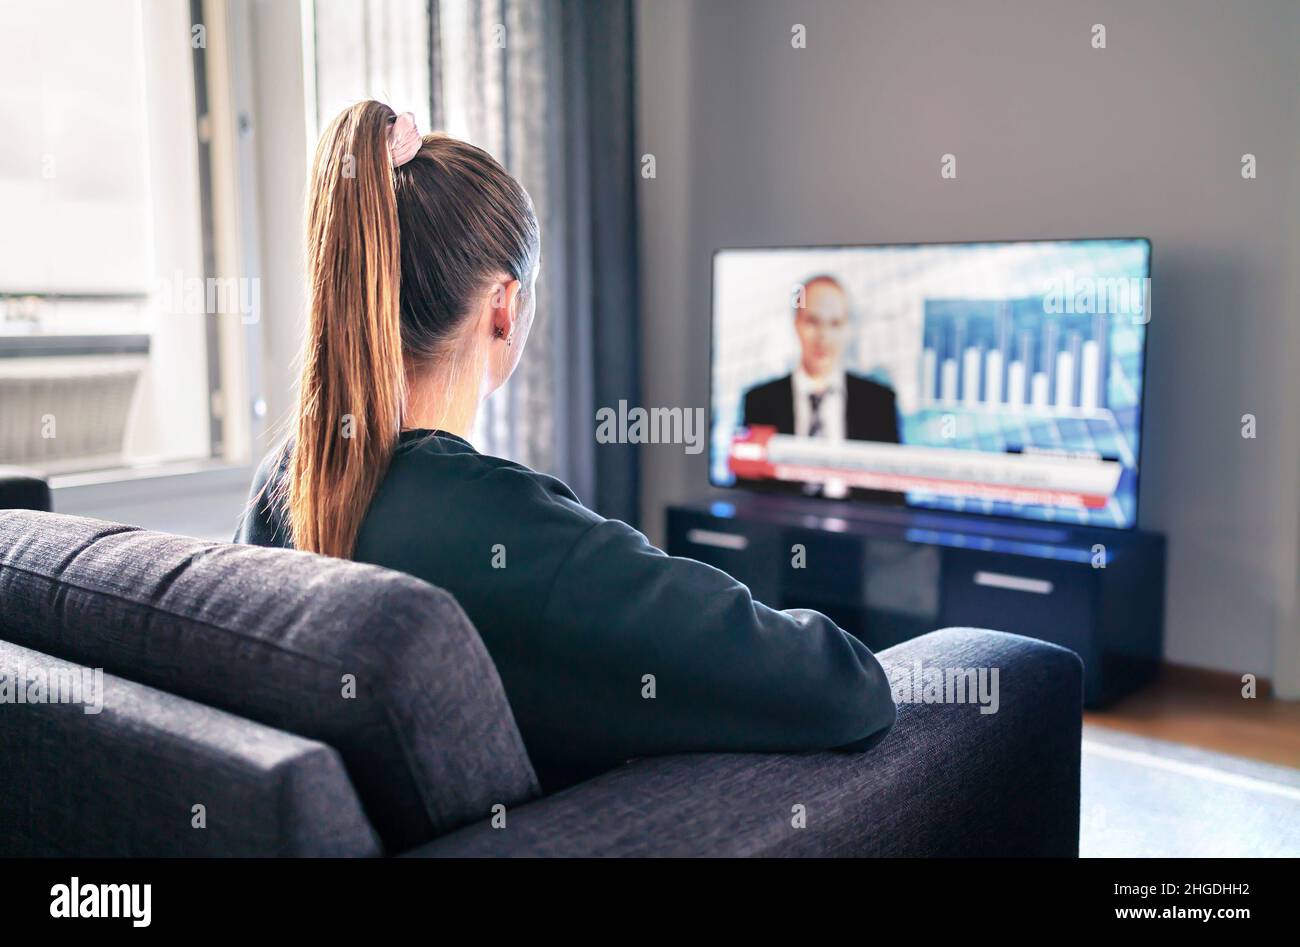 Actualités TV.Femme regardant la télévision dans le salon.Reporter, ancre et hôte studio à l'écran avec des titres de nouvelles.Personne assise. Banque D'Images